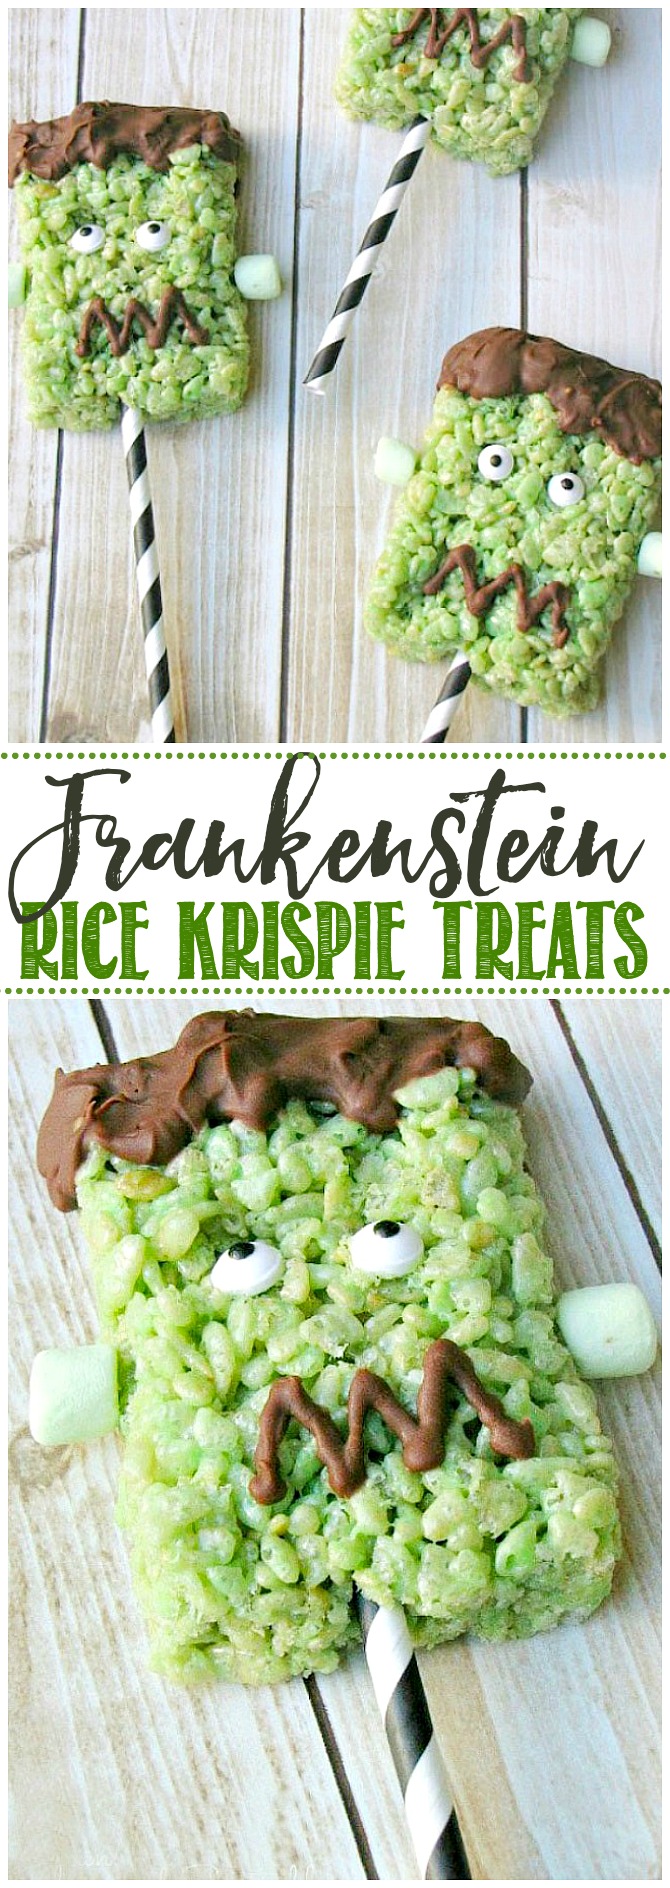 Cute Frankenstein Rice Krispie treat with paper straw handle.